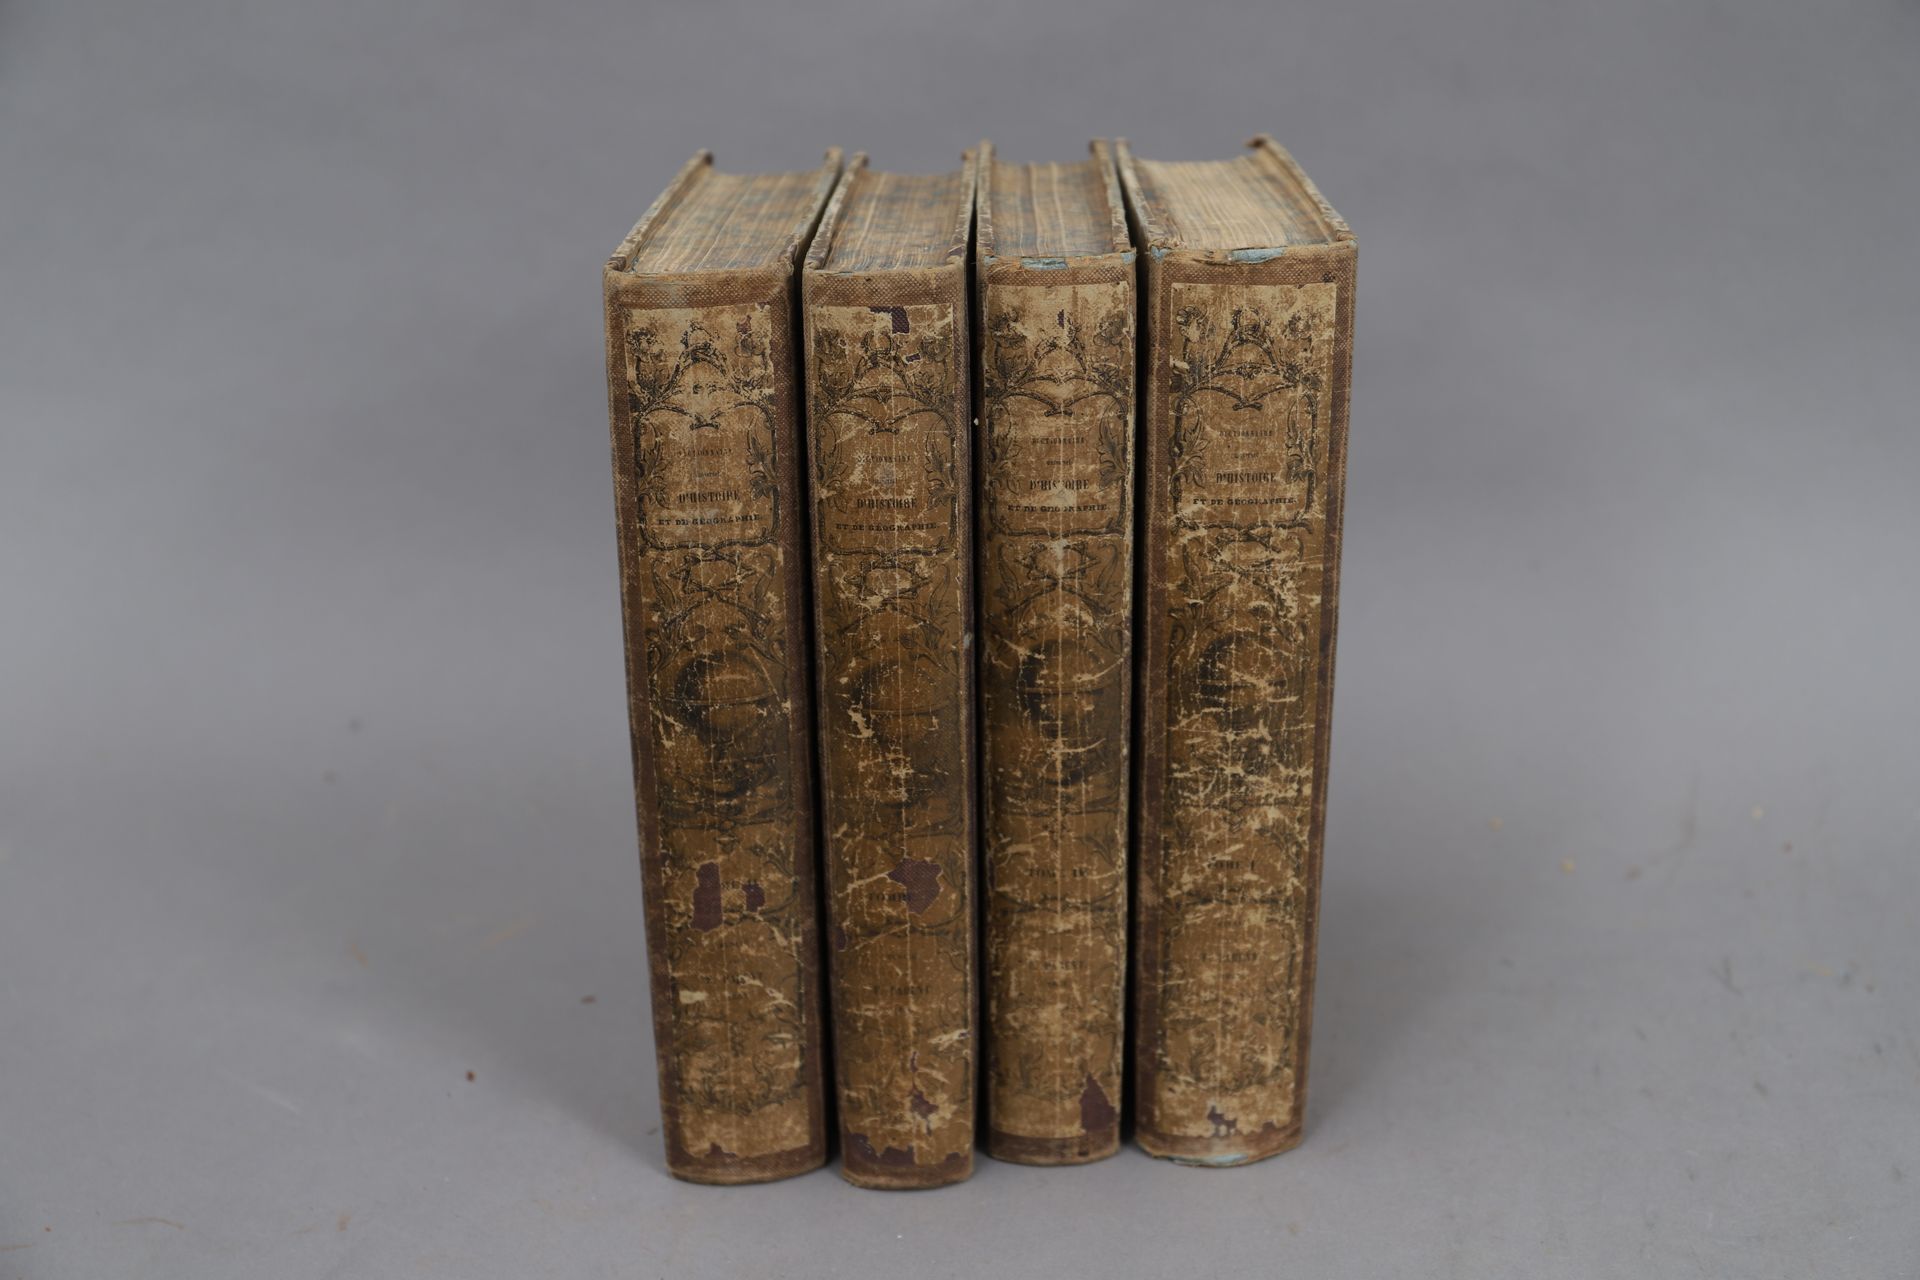 Null DICCIONARIO de HISTORIA y GEOGRAFÍA de DOUILLET

4 volúmenes encuadernados.